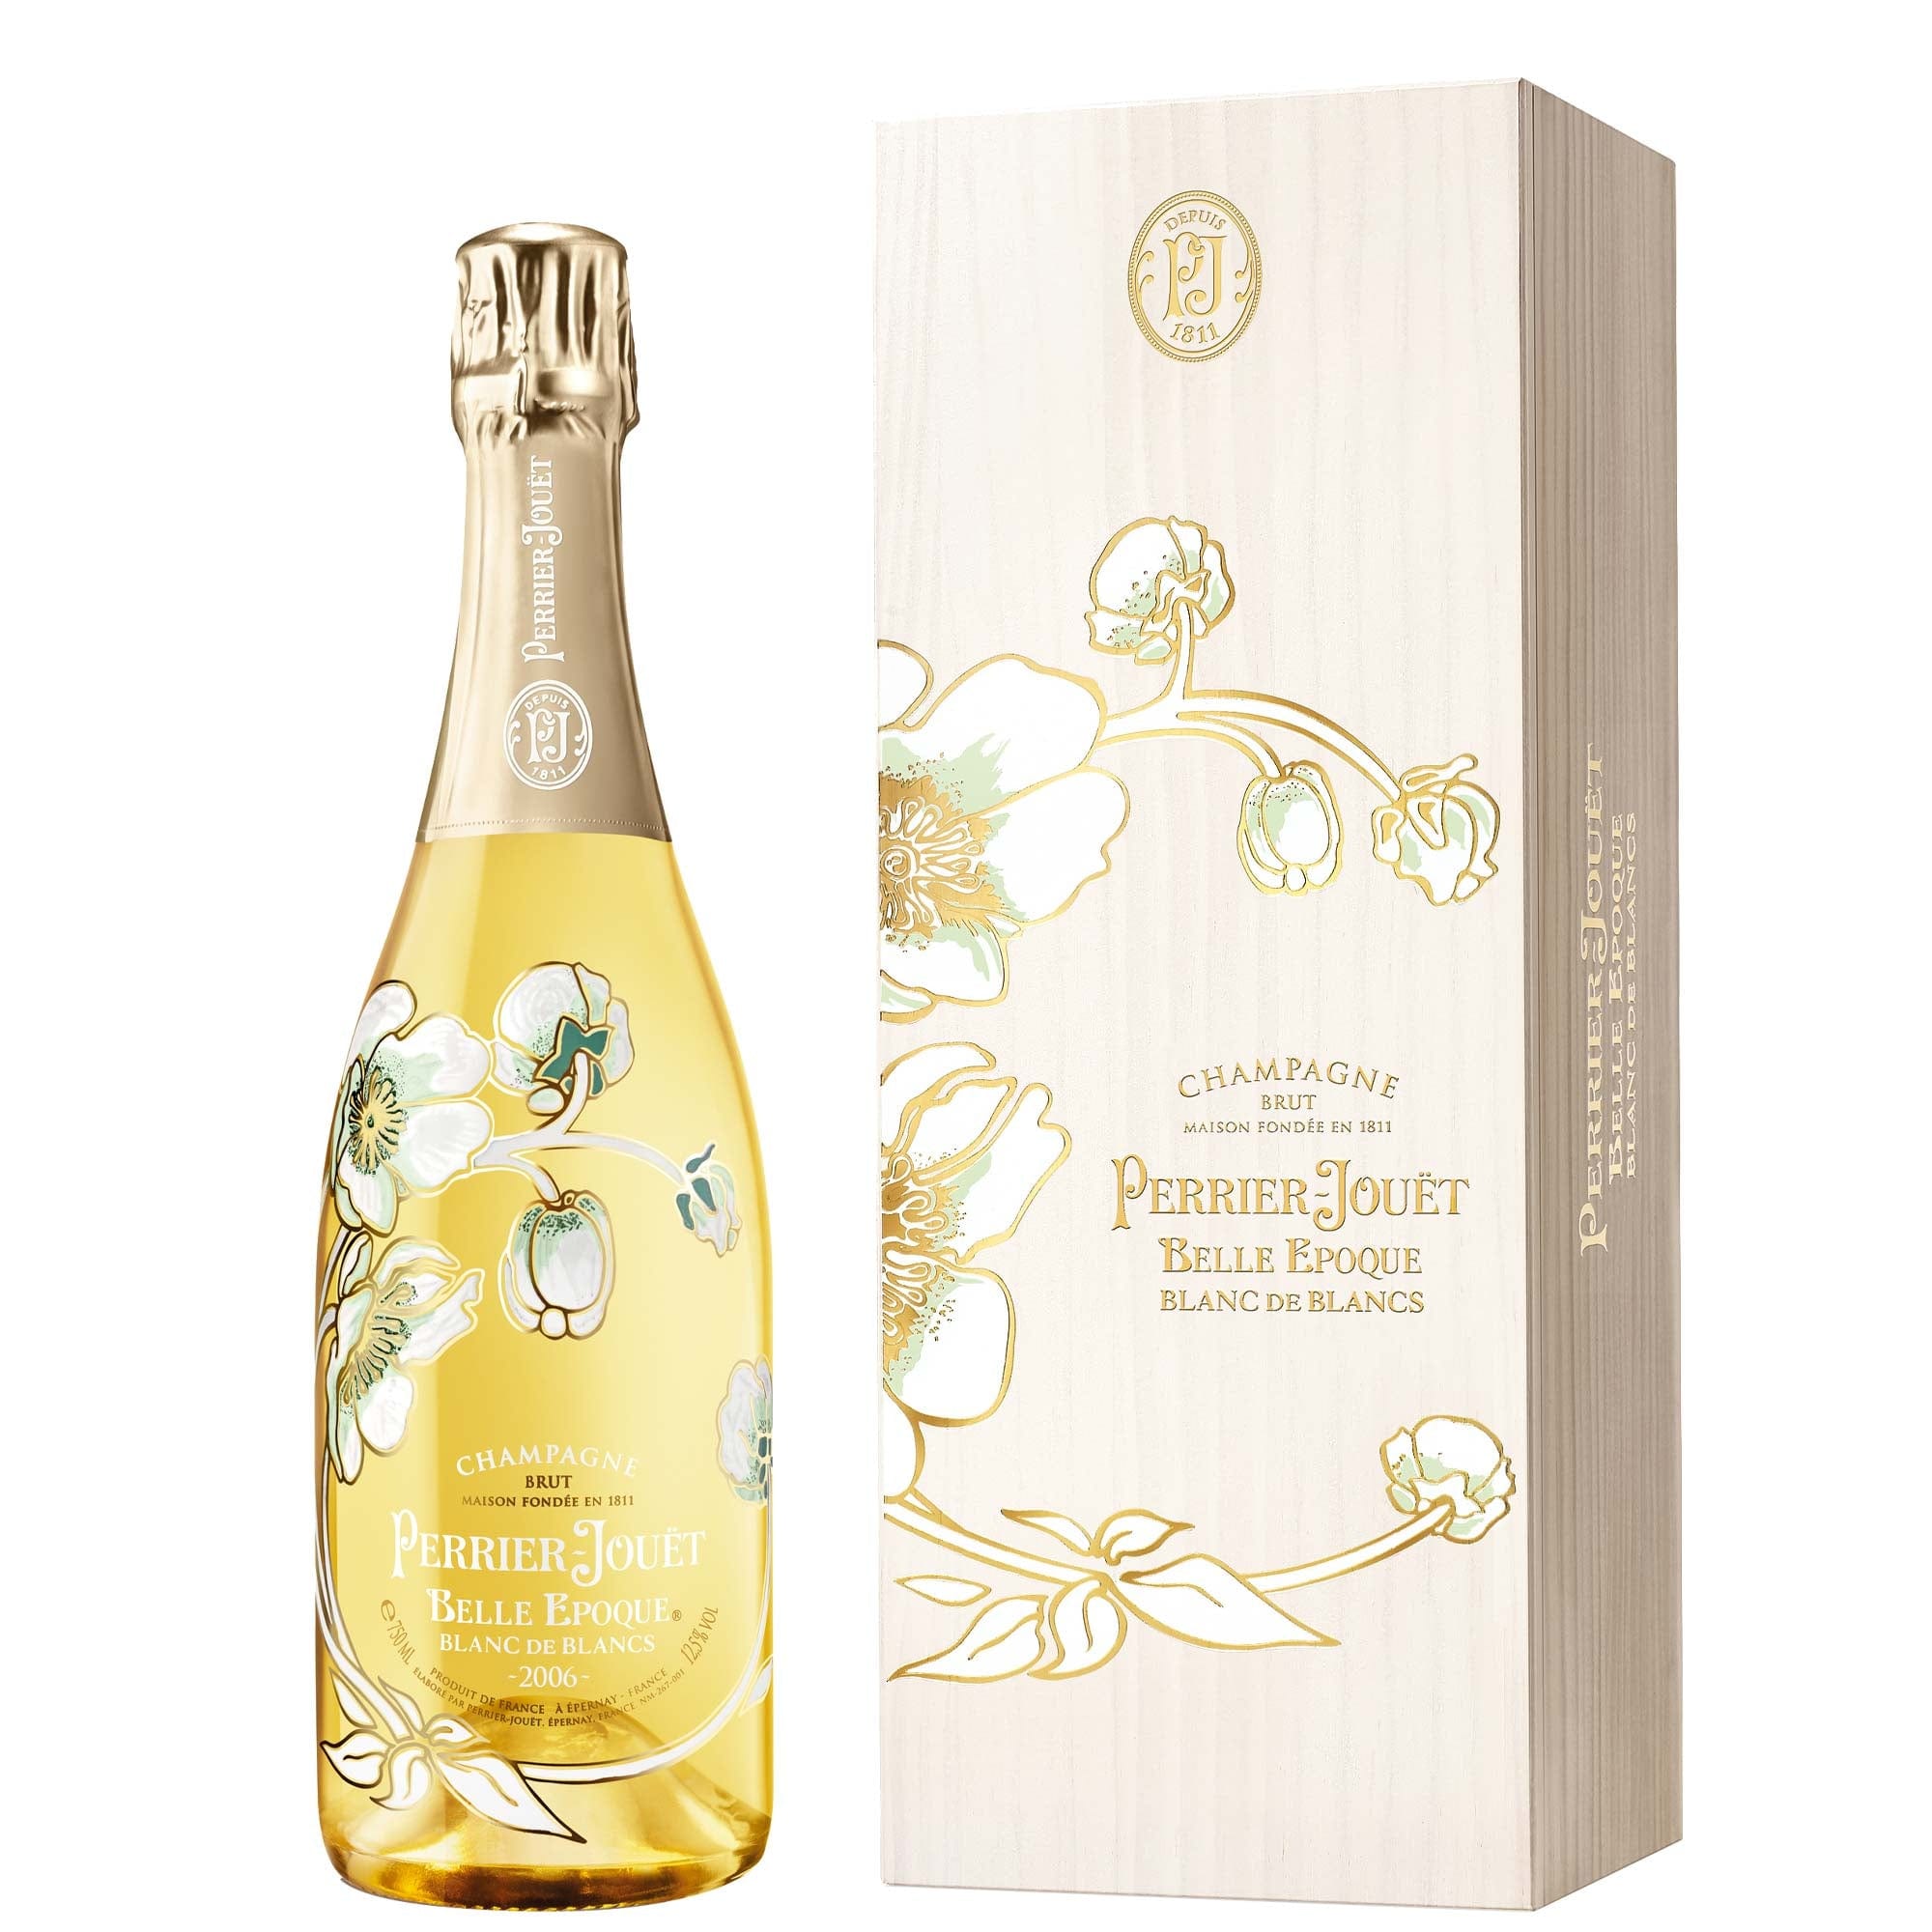 Perrier-Jouët Champagne Brut Blanc de Blancs Belle Epoque 2012 - Perrier-Jouët